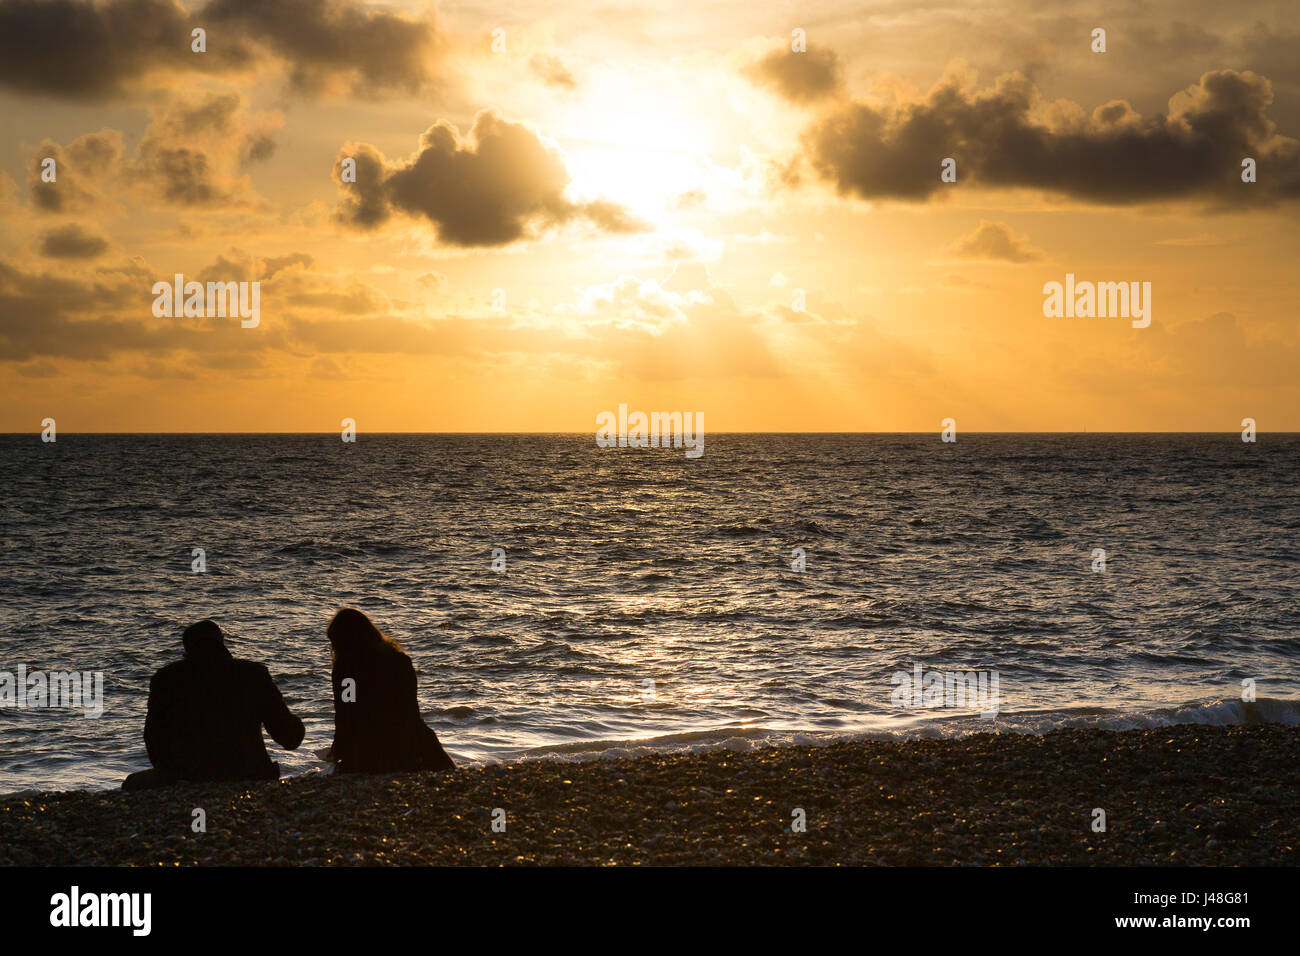 Brighton, UK. Couple sitting on shingle beach enjoying a sunset. Stock Photo